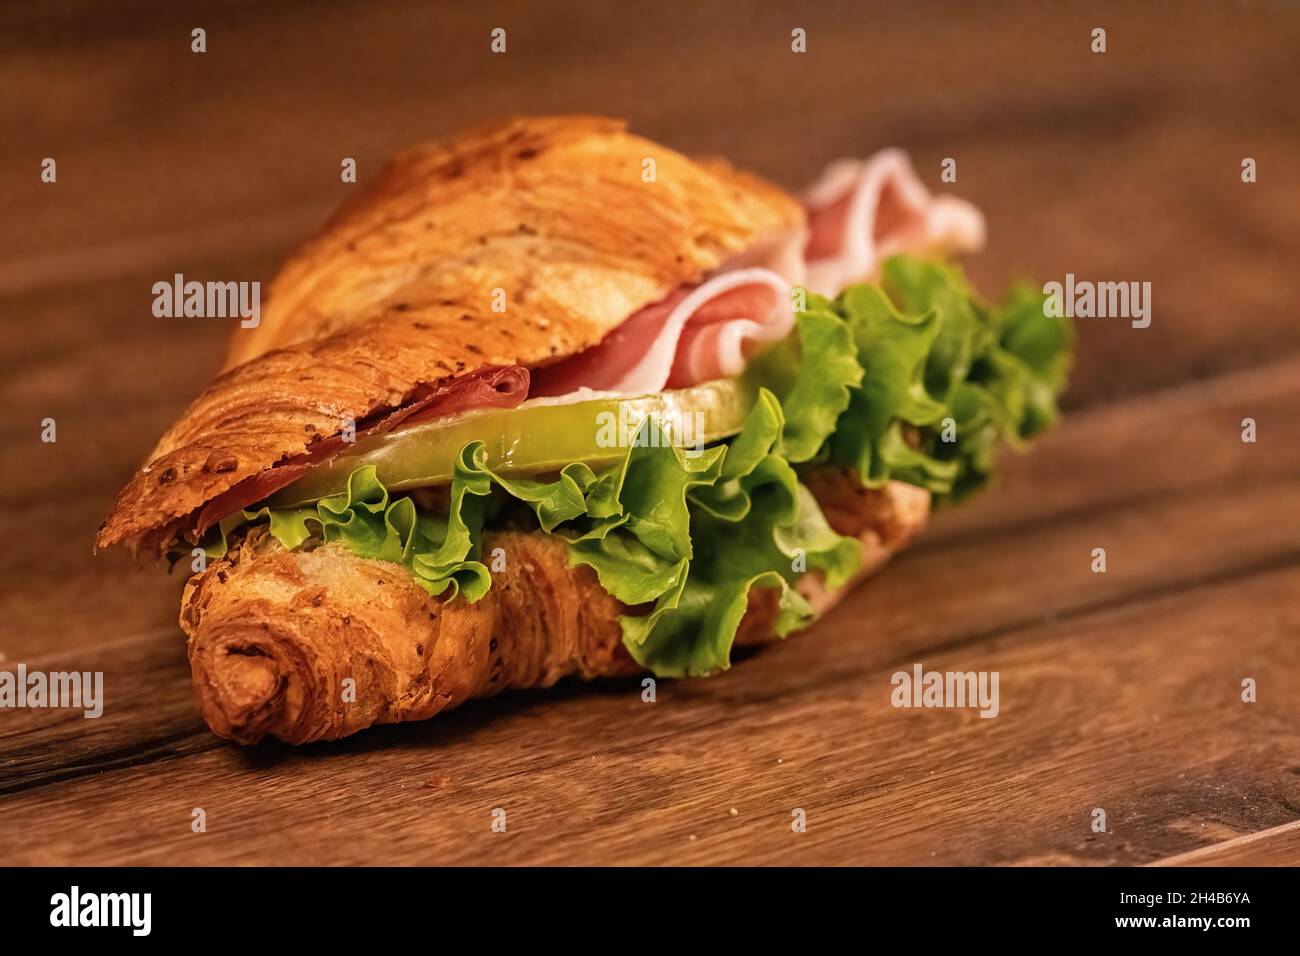 sandwich avec salami et légumes sur une surface en bois Banque D'Images